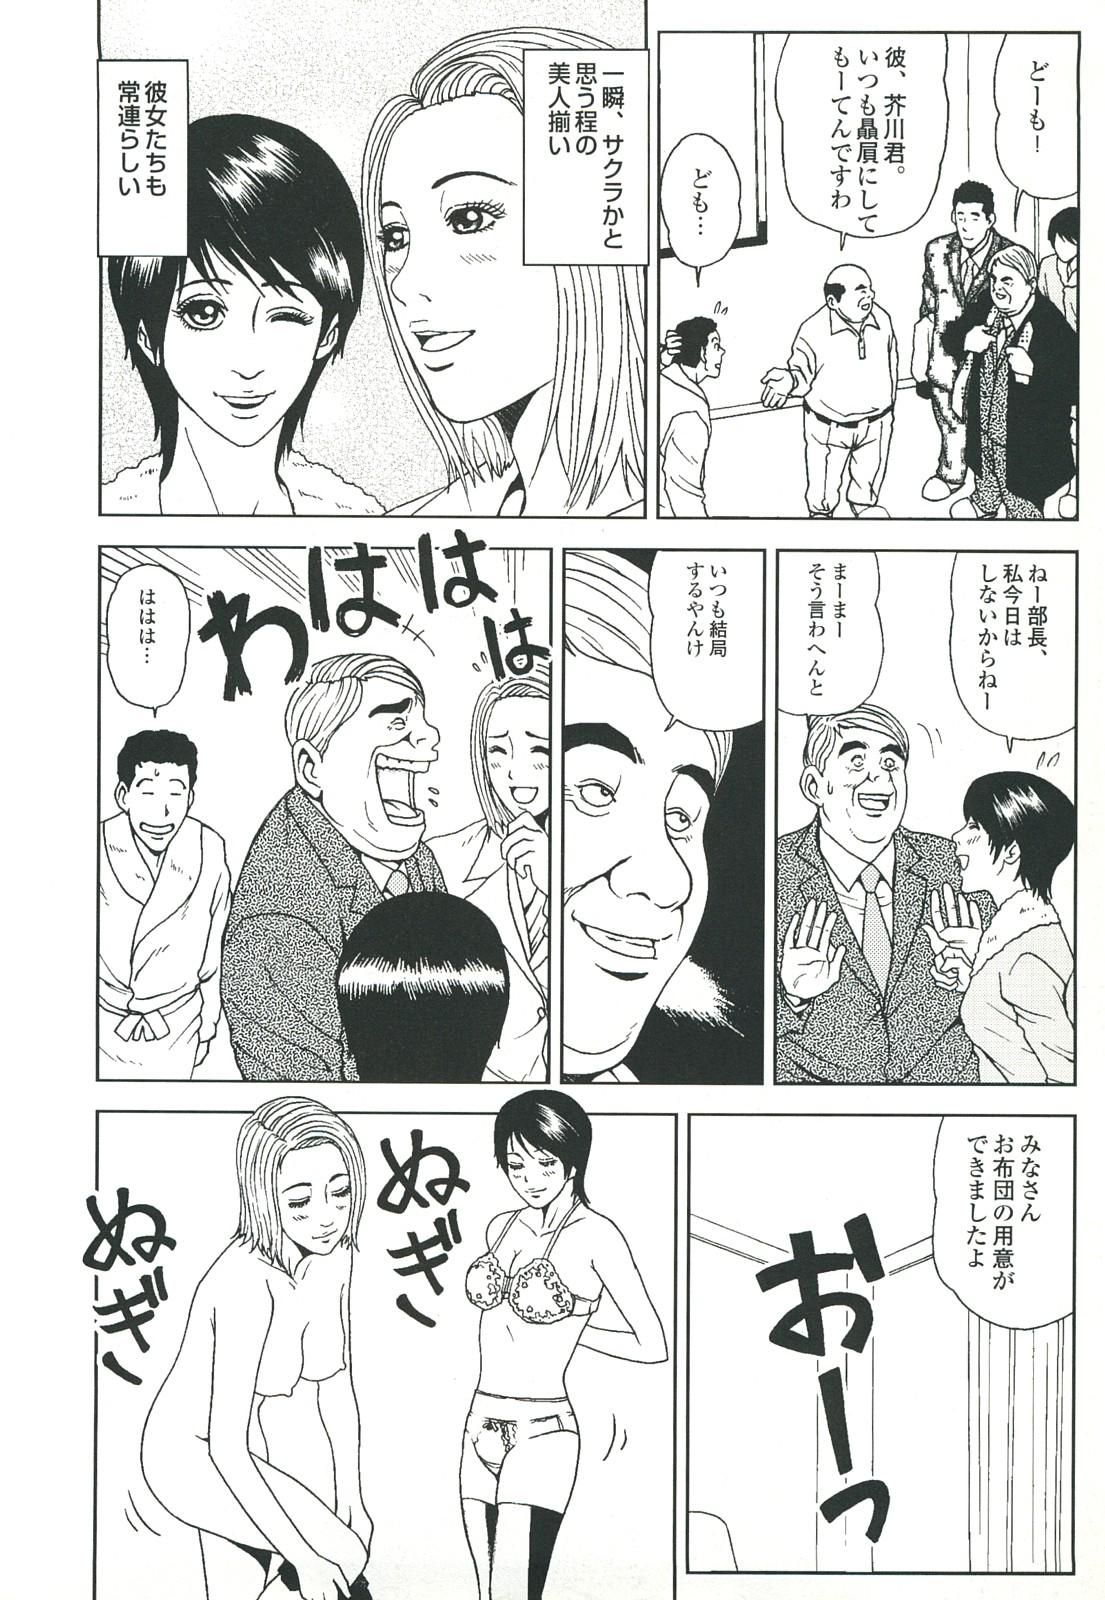 コミック裏モノJAPAN Vol.18 今井のりたつスペシャル号 69